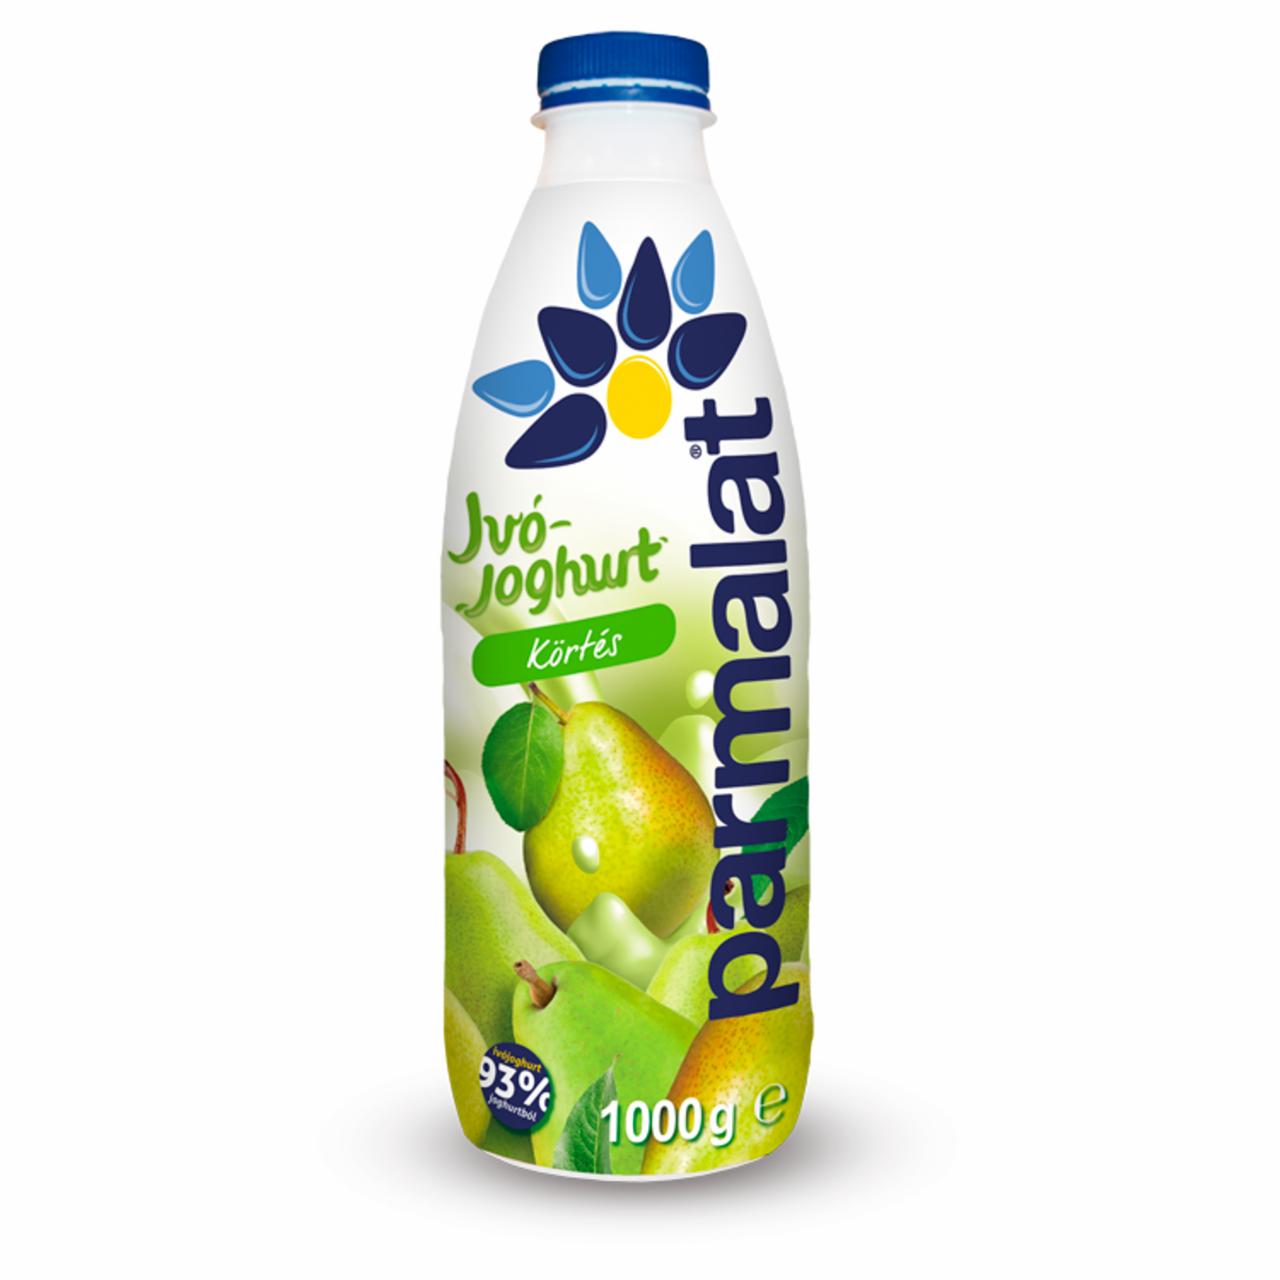 Képek - Parmalat zsírszegény körtés ivójoghurt 1000 g